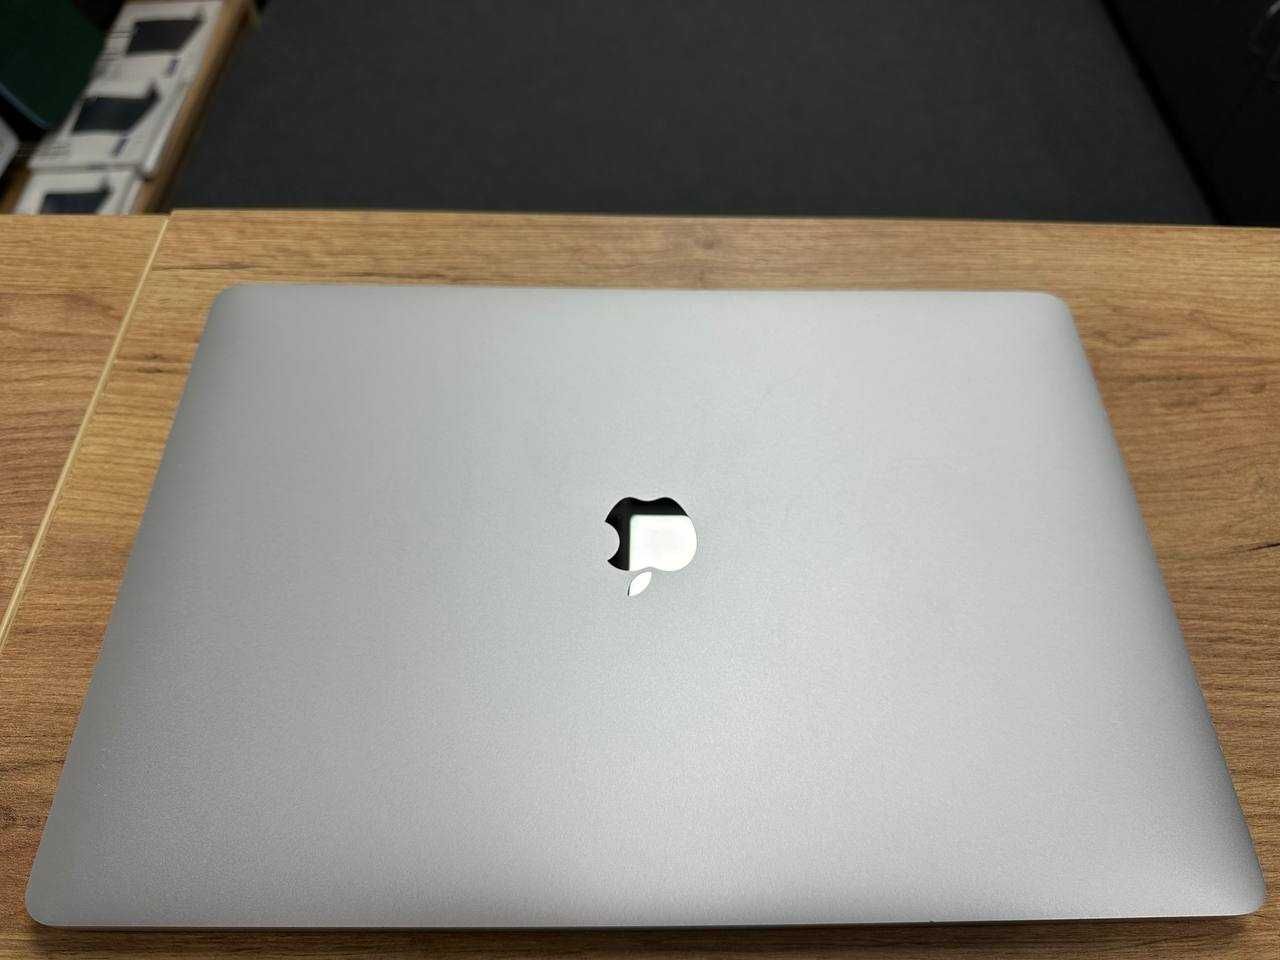 I7|16|512 Гарантія MacBook Pro 15 2019(ні 2018) Ідеальний стан Макбук